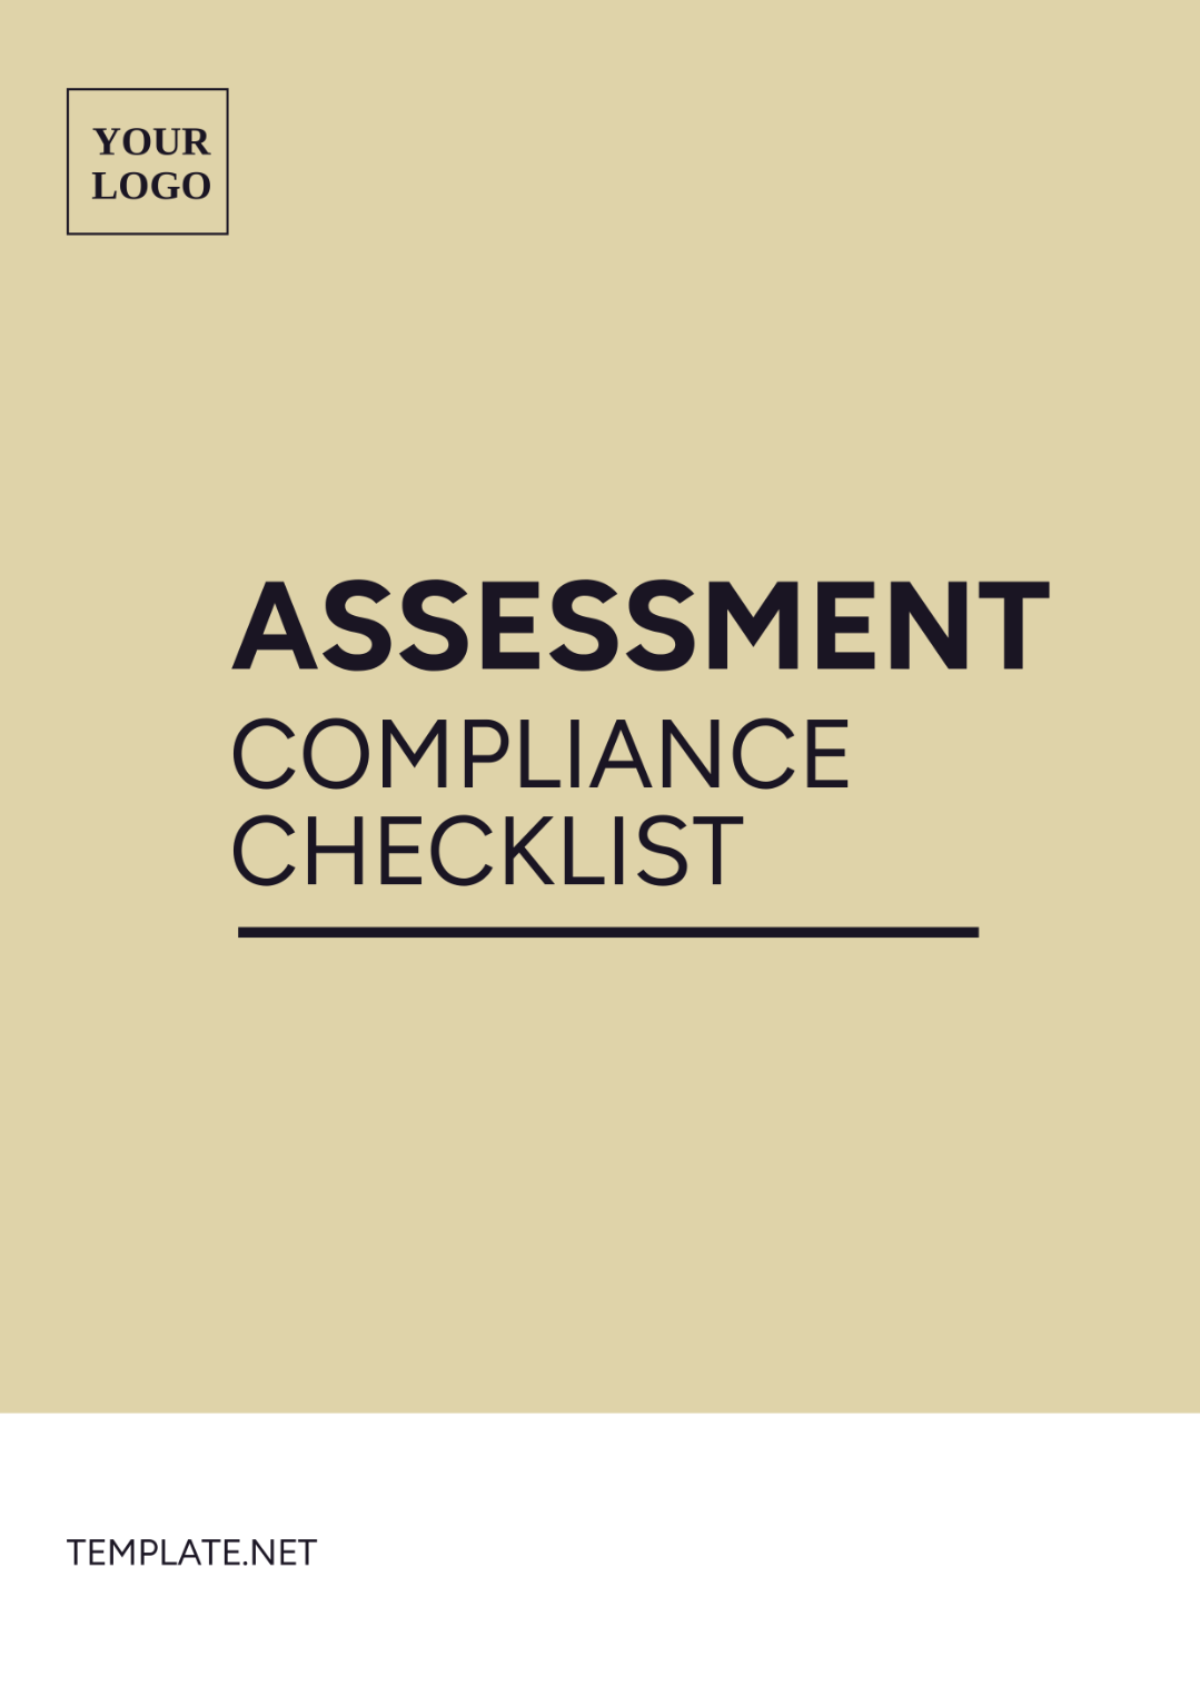 Assessment Compliance Checklist Template